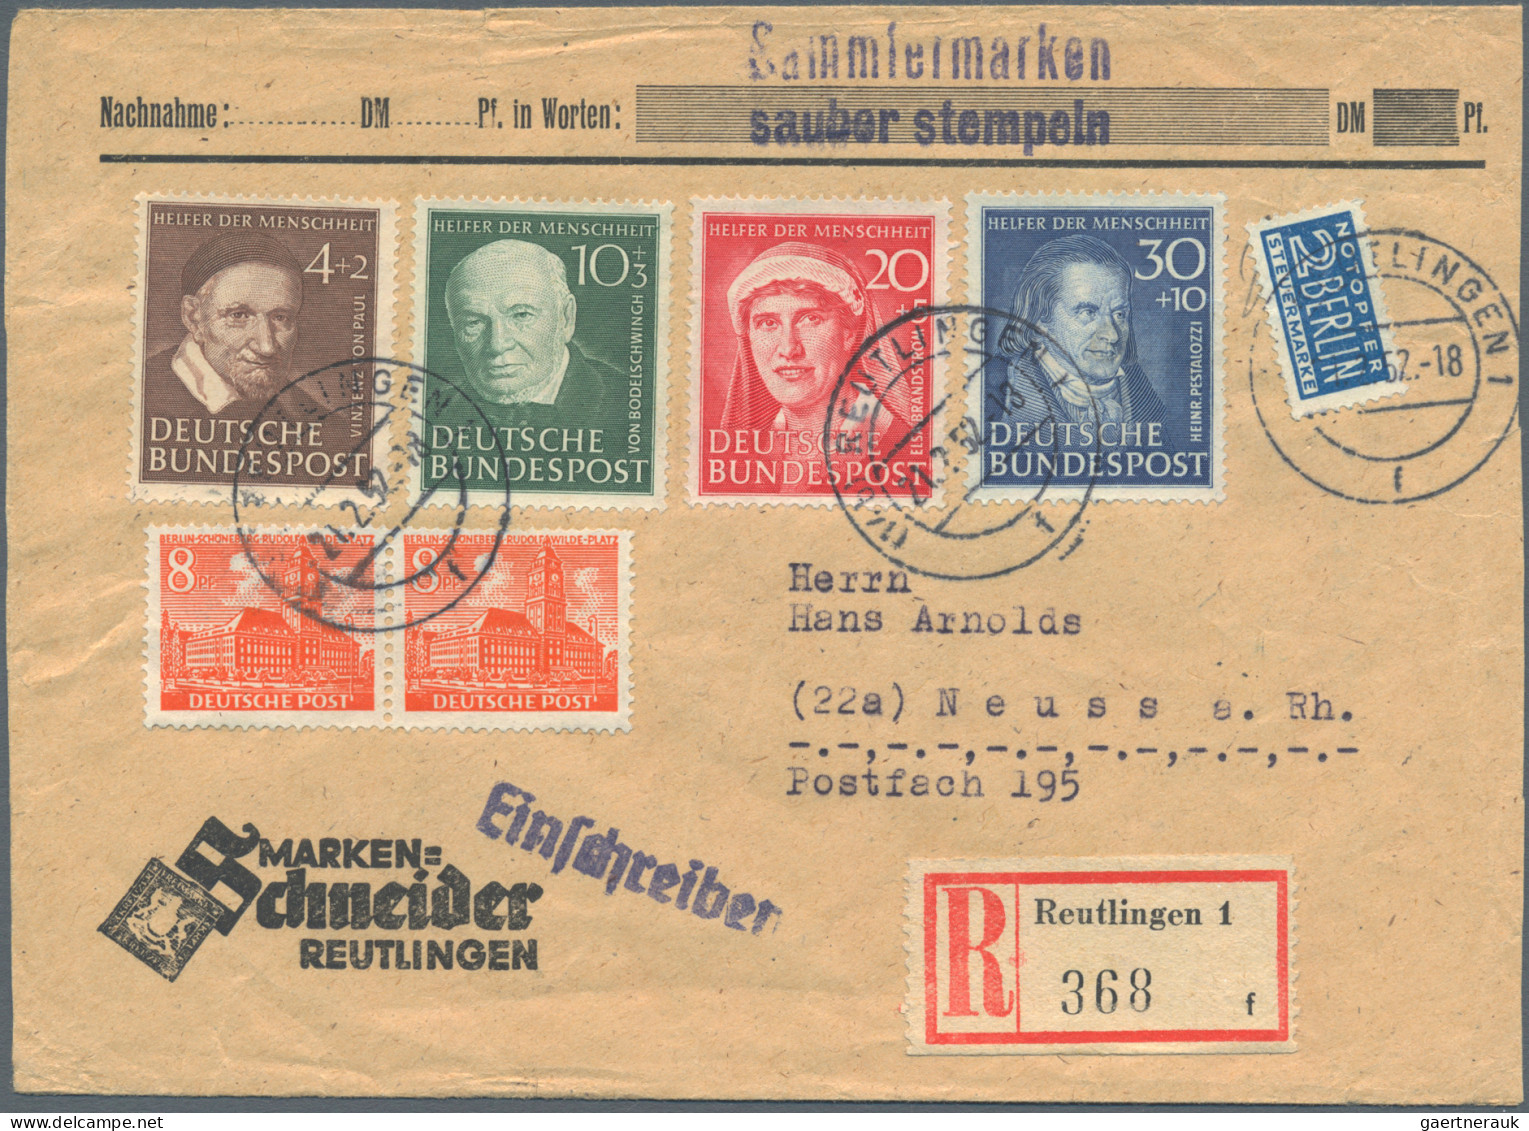 Bundesrepublik Deutschland: 1949/1964, saubere Sammlung von ca. 150 Briefen und